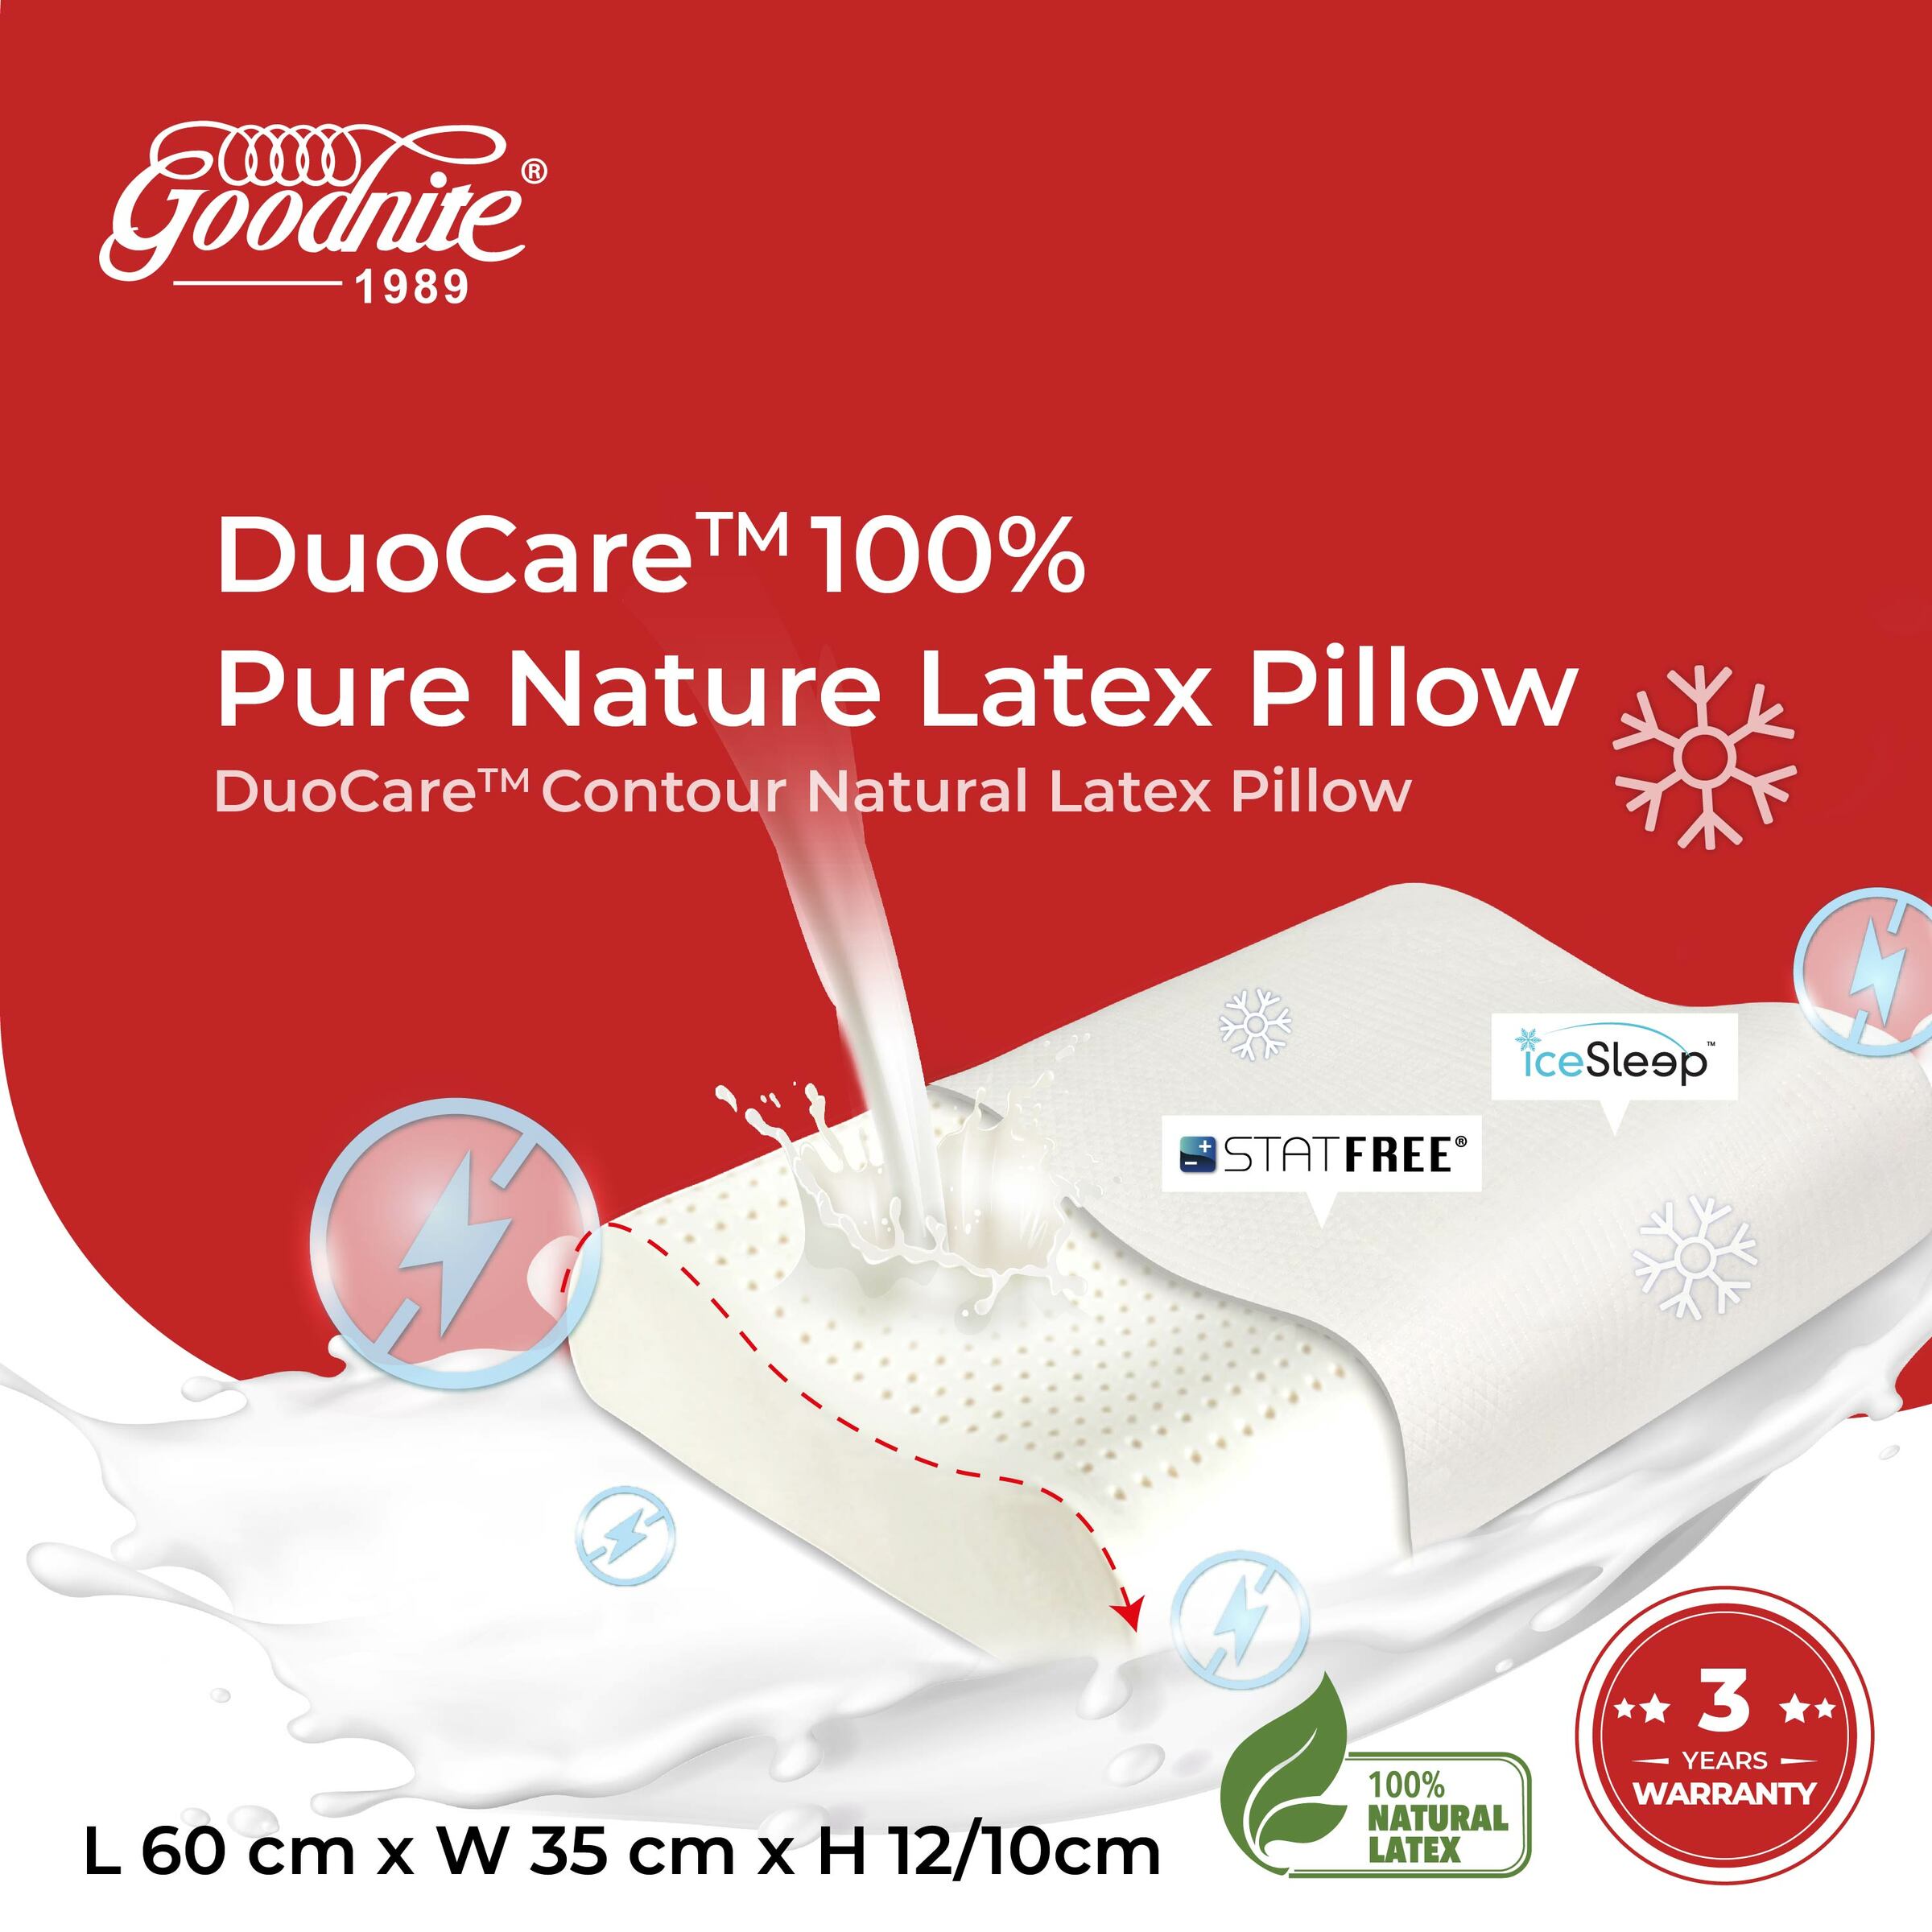 Lorikeet_DuoCare Contour Natural Latex Pillow-01.jpg